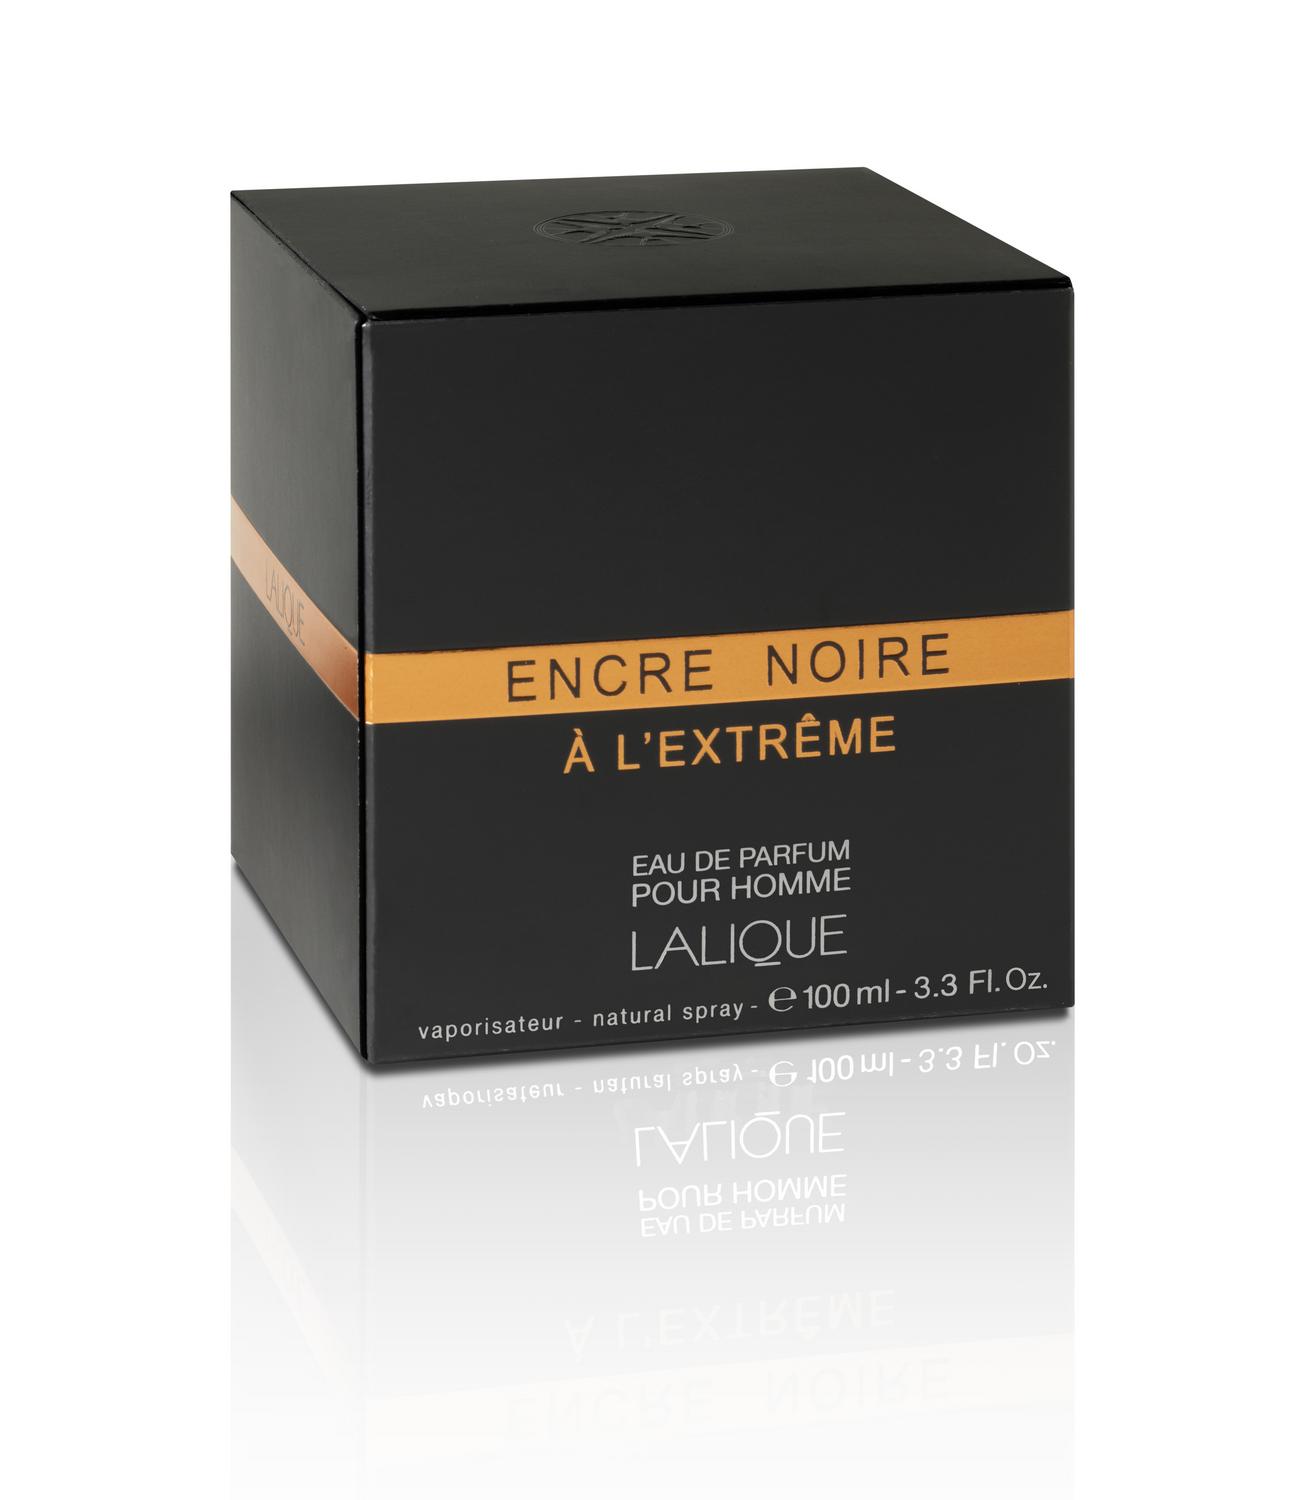 Lalique Encre Noire Homme Eau de Toilette